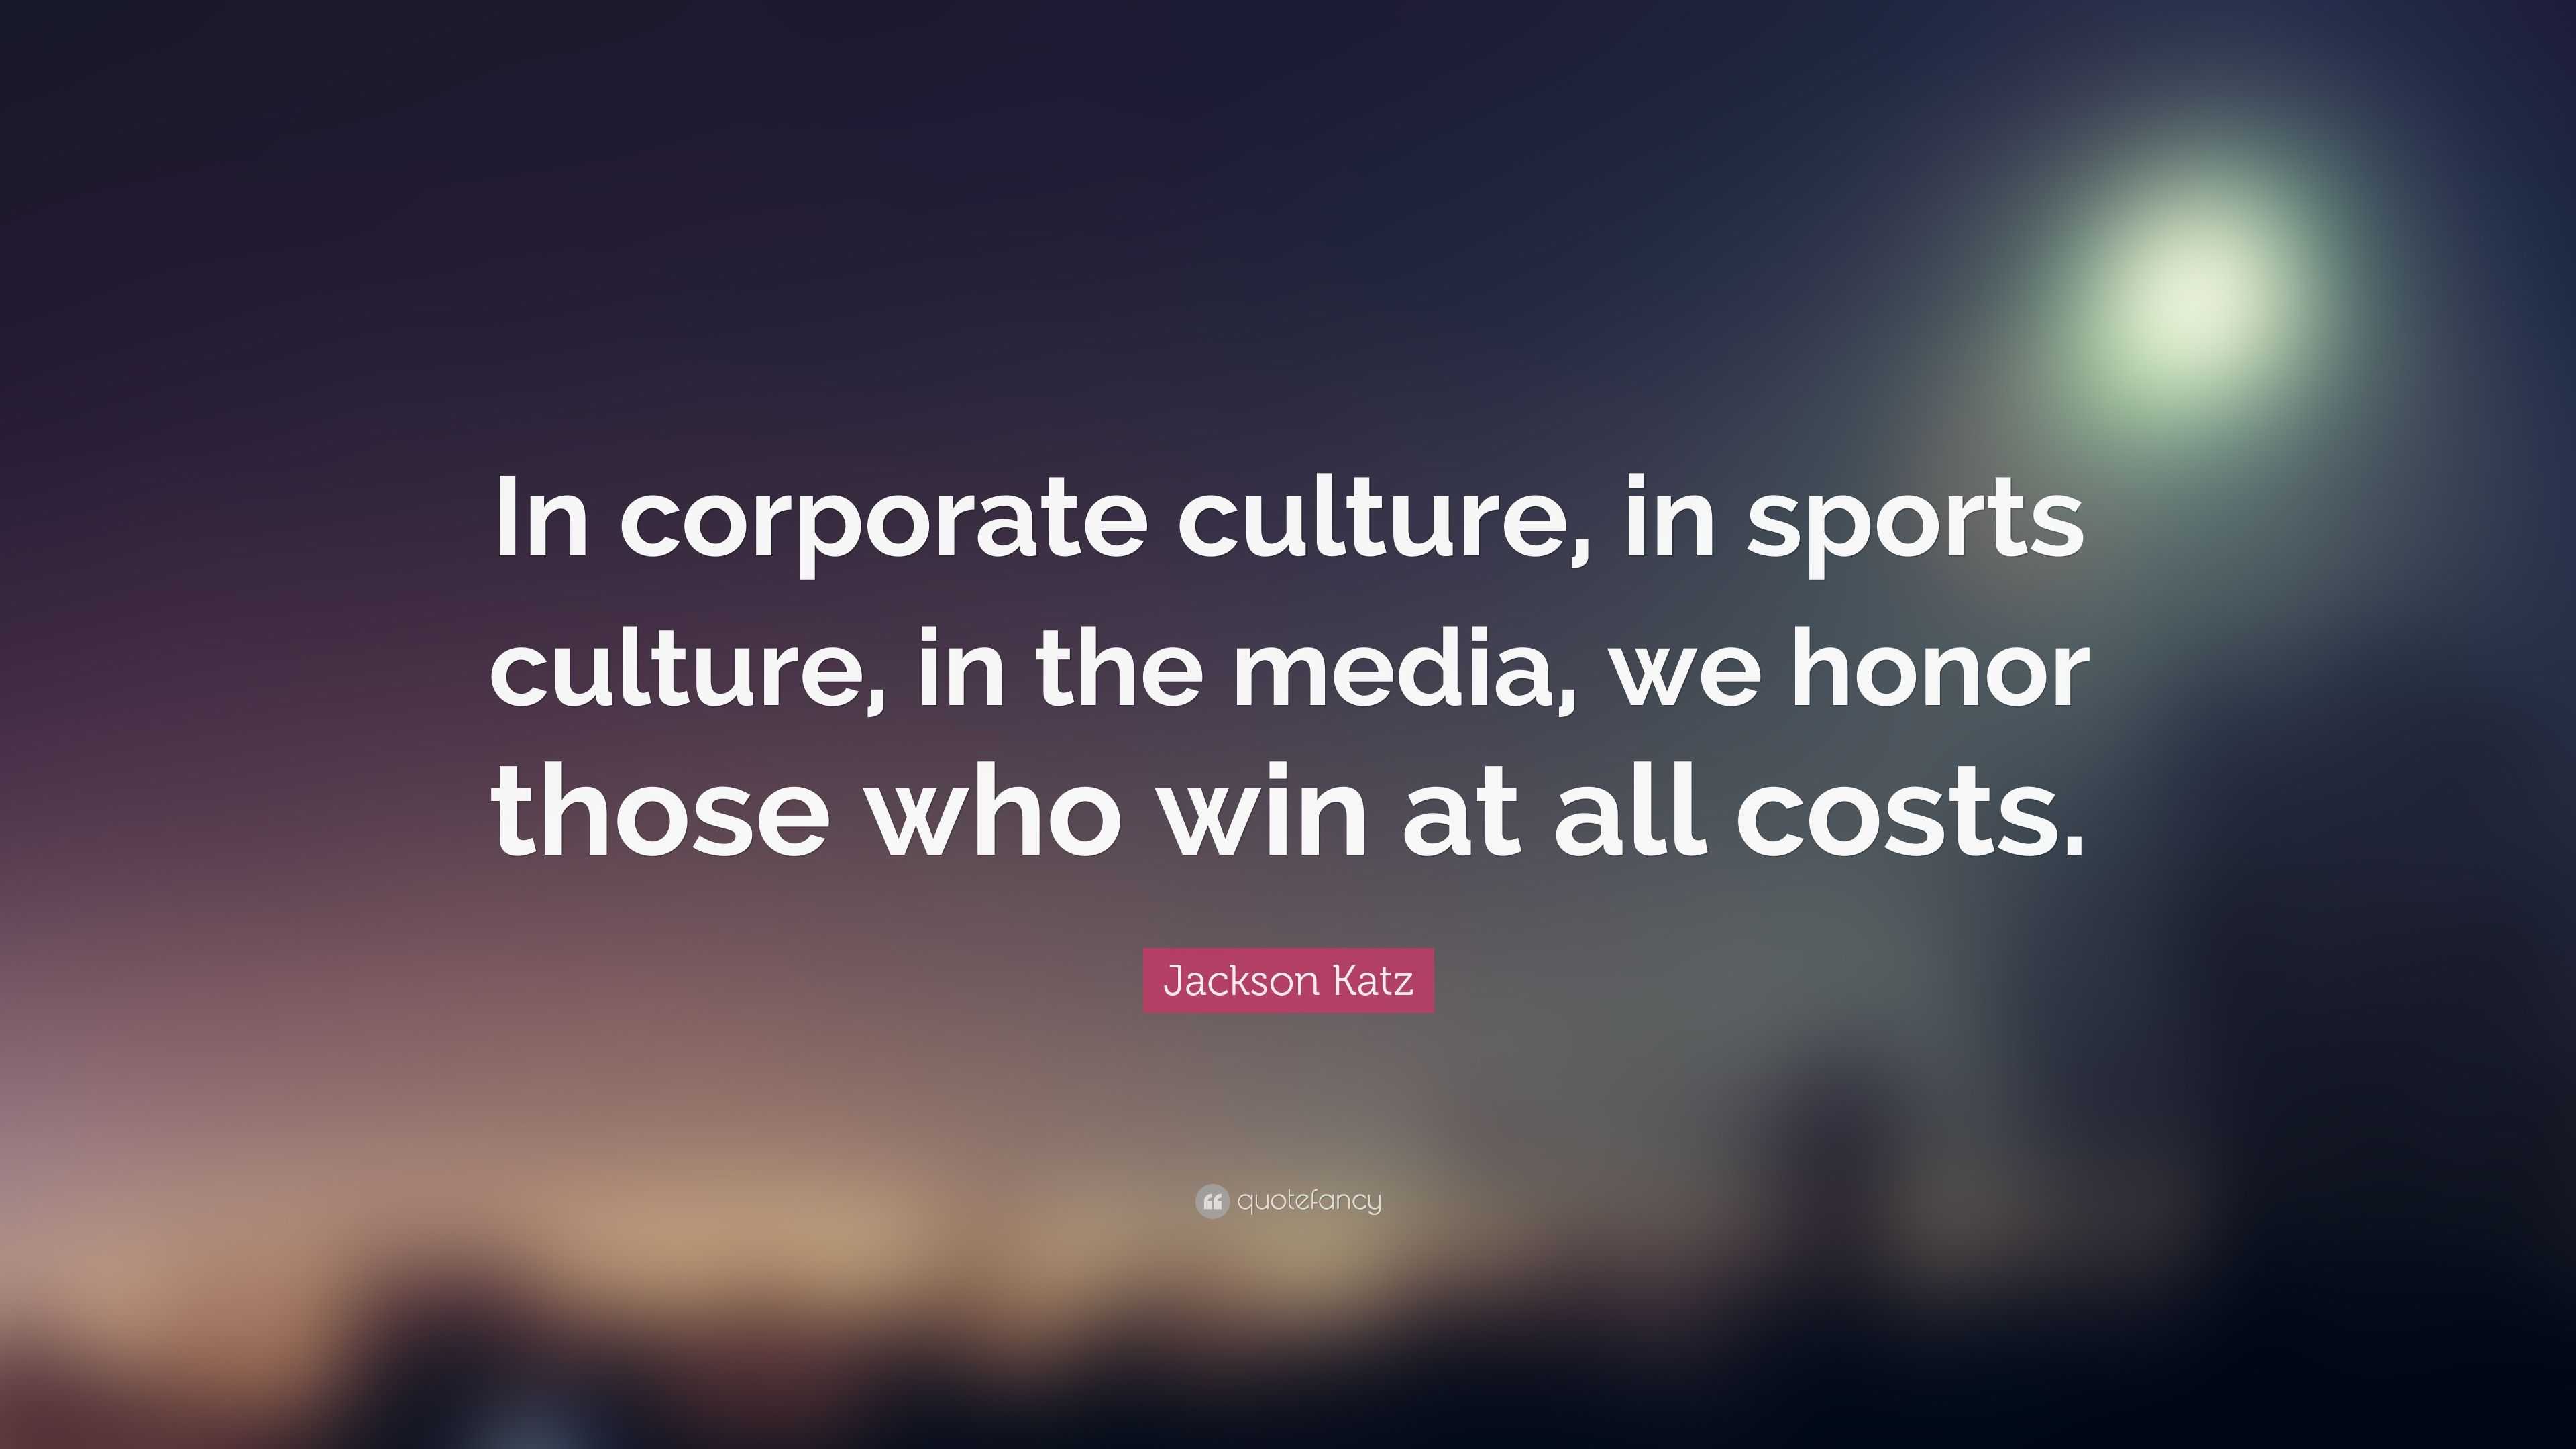 Culture in Sports